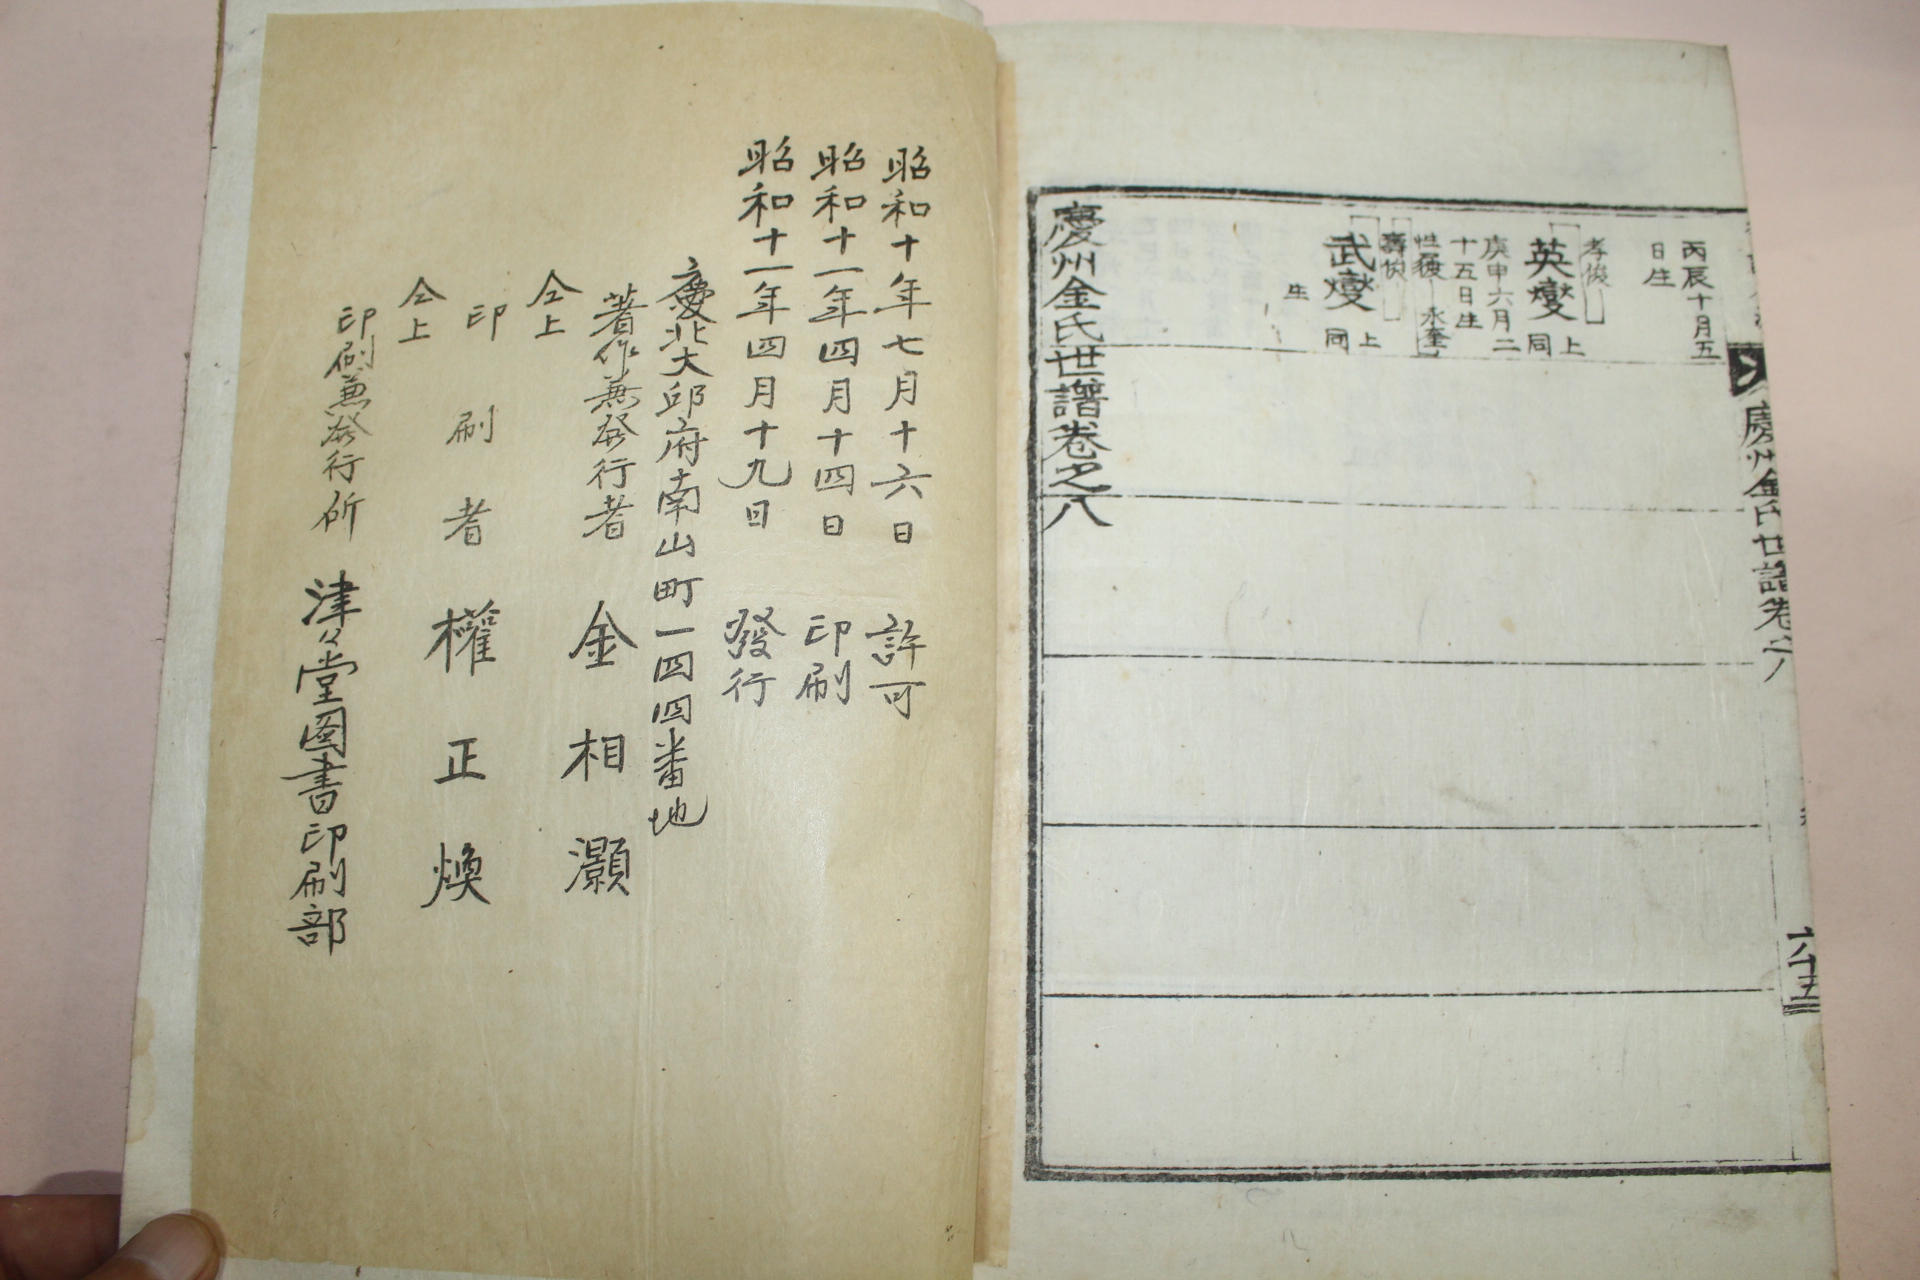 1936년 대구간행 경주김씨세보(慶州金氏世譜) 8책완질